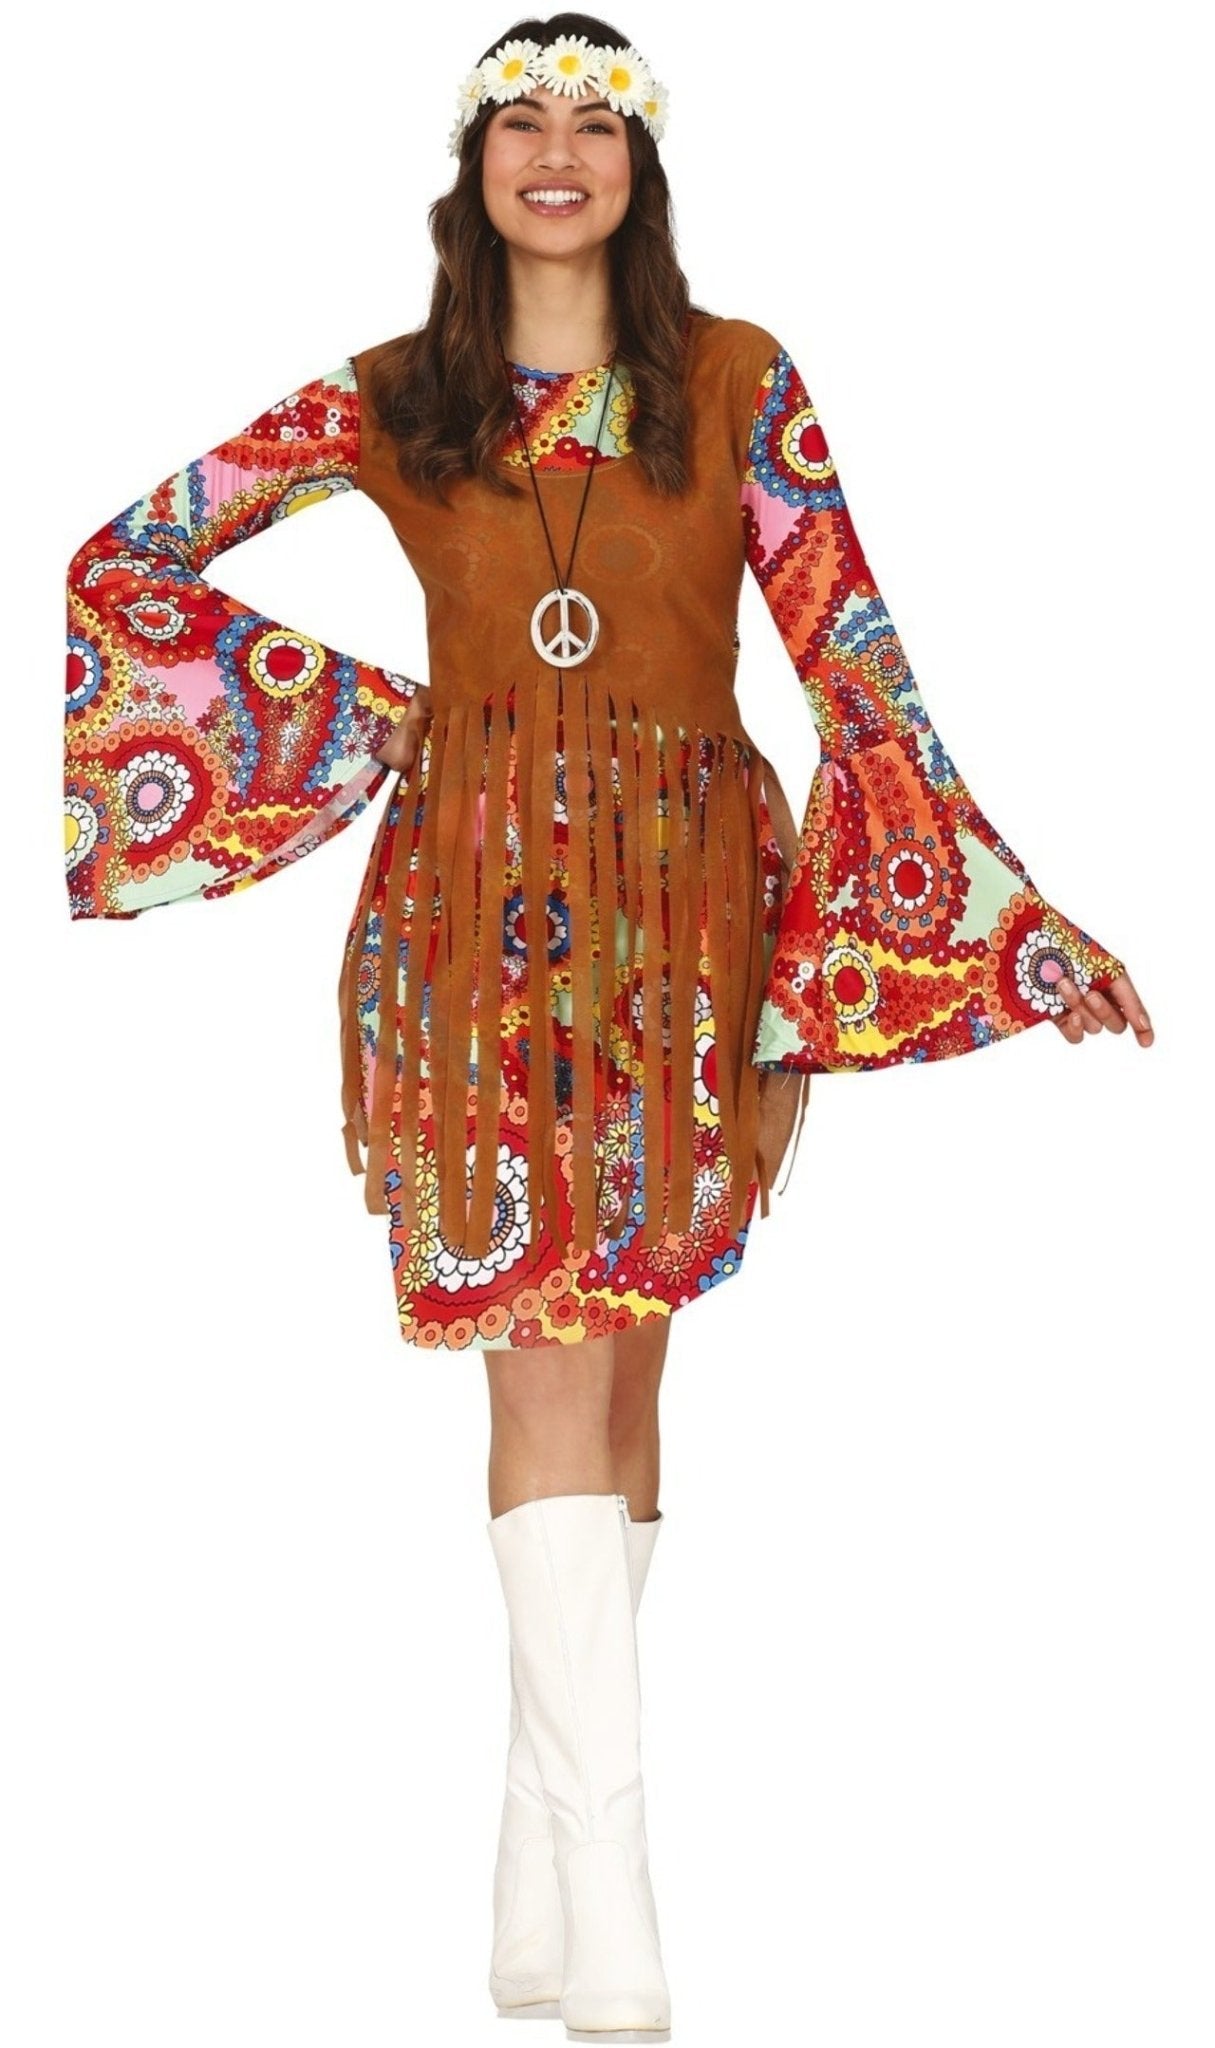 Kit accessori da hippie retrò per adulto: Accessori,e vestiti di